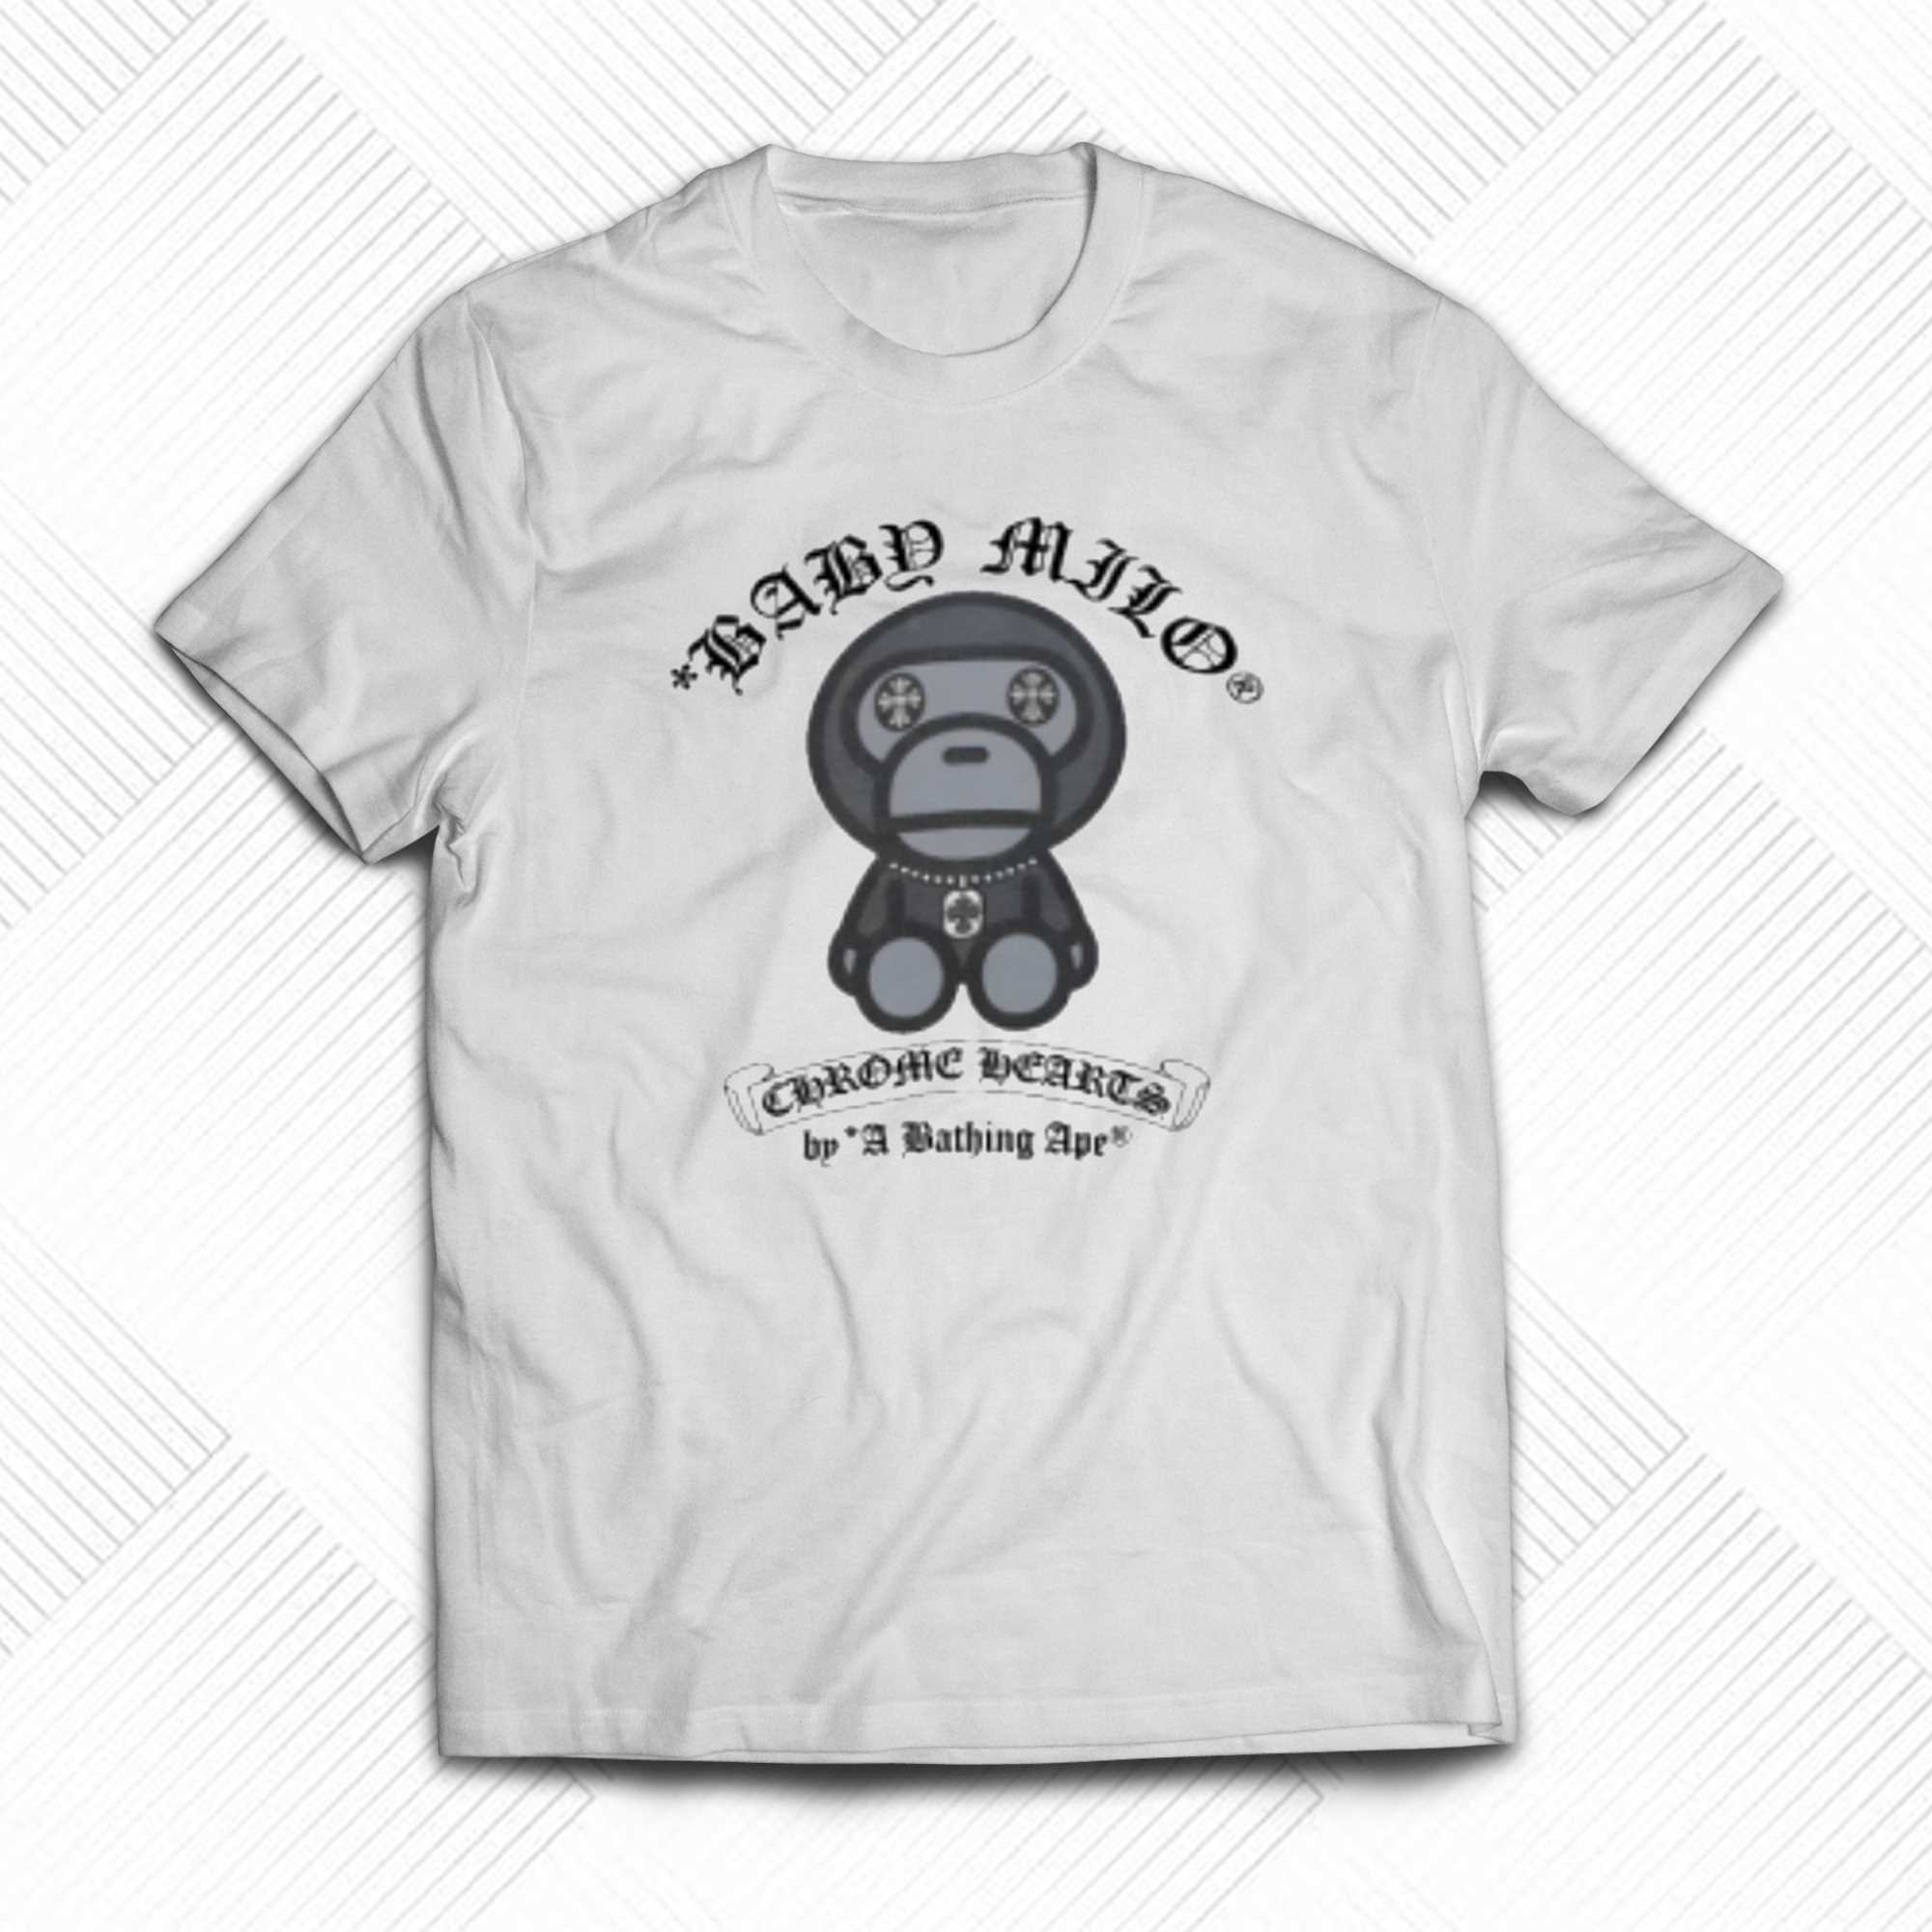 Bape Baby Milo Chrome Hearts By A Bathing Ape T-shirt